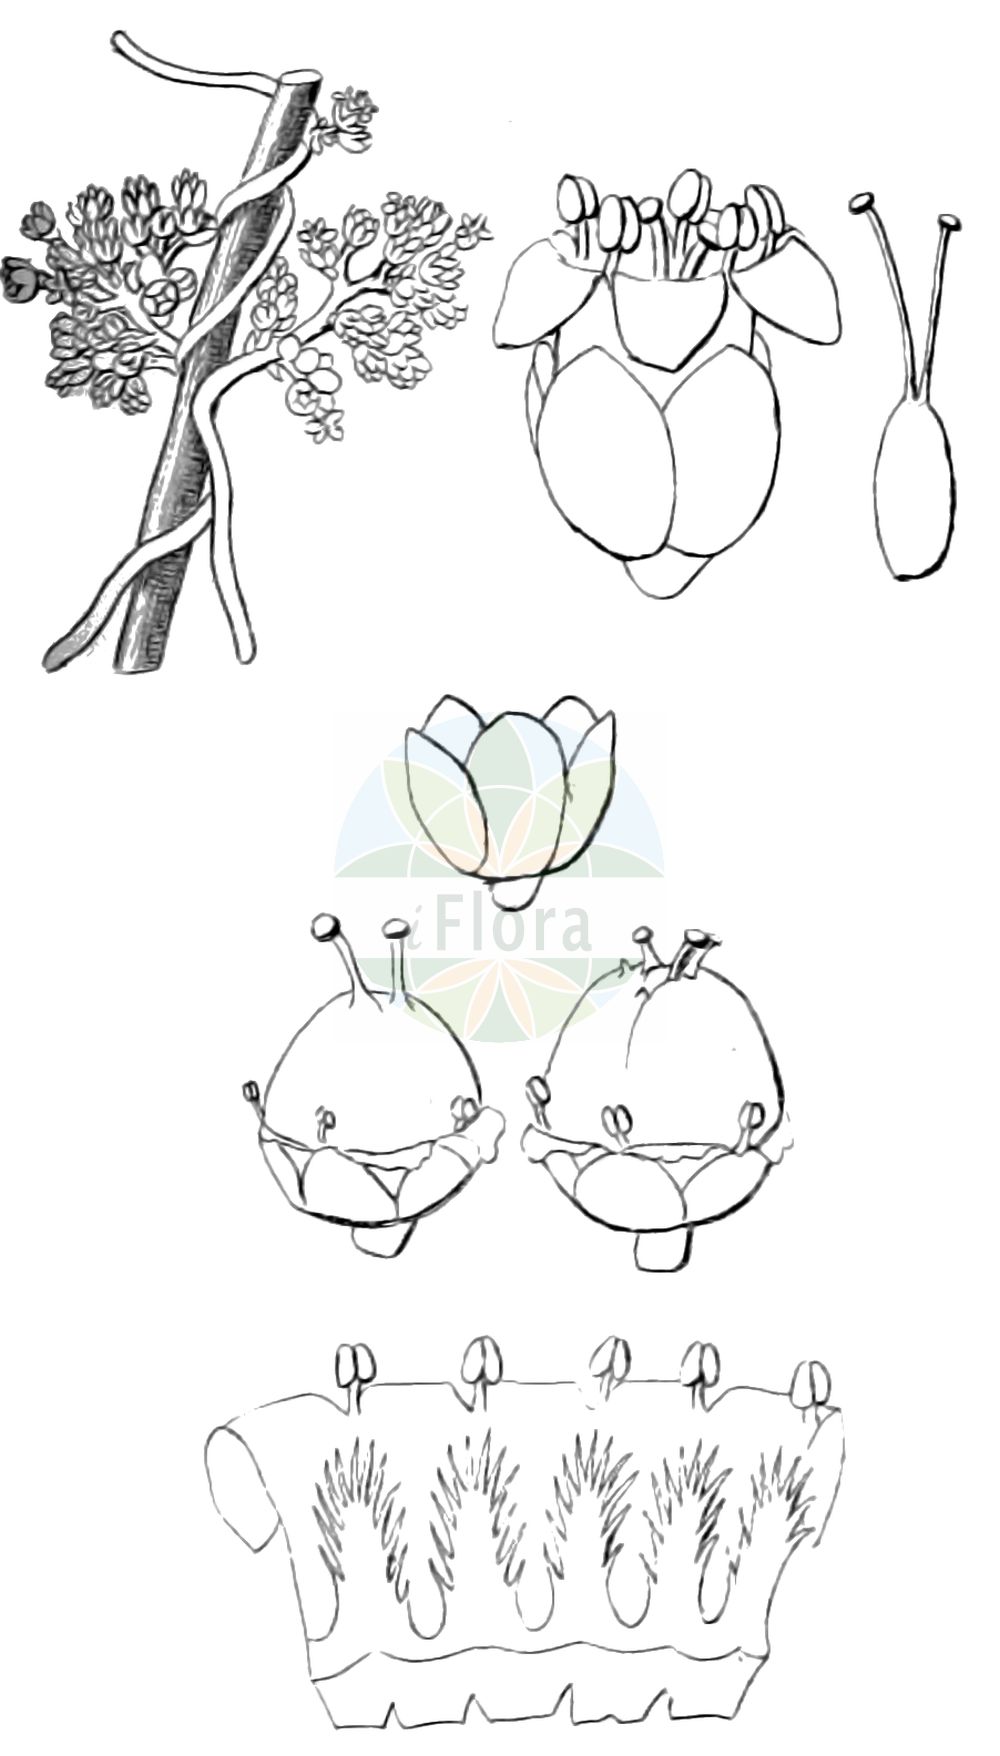 Historische Abbildung von Cuscuta gronovii (Gronovius Seide - Scaldweed). Das Bild zeigt Blatt, Bluete, Frucht und Same. ---- Historical Drawing of Cuscuta gronovii (Gronovius Seide - Scaldweed). The image is showing leaf, flower, fruit and seed.(Cuscuta gronovii,Gronovius Seide,Scaldweed,Cuscuta gronovii,Grammica gronovii,Gronovius Seide,Gronovius-Seide,Warzige Seide,Scaldweed,Gronovius Dodder,Swamp Dodder,Cuscuta,Seide,Dodder,Convolvulaceae,Windengewächse,Bindweed family,Blatt,Bluete,Frucht,Same,leaf,flower,fruit,seed)